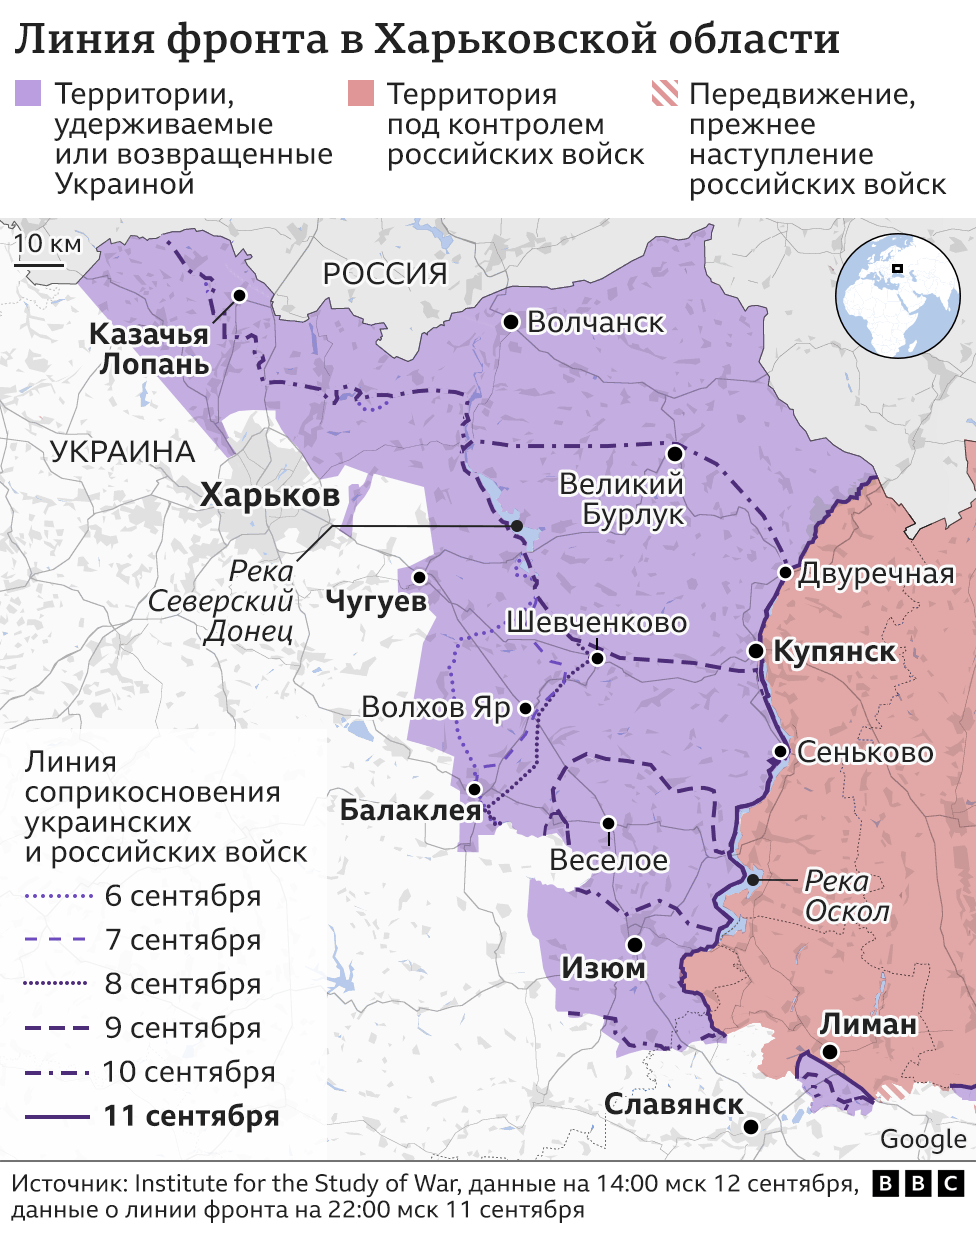 Ситуация в Харьковской области